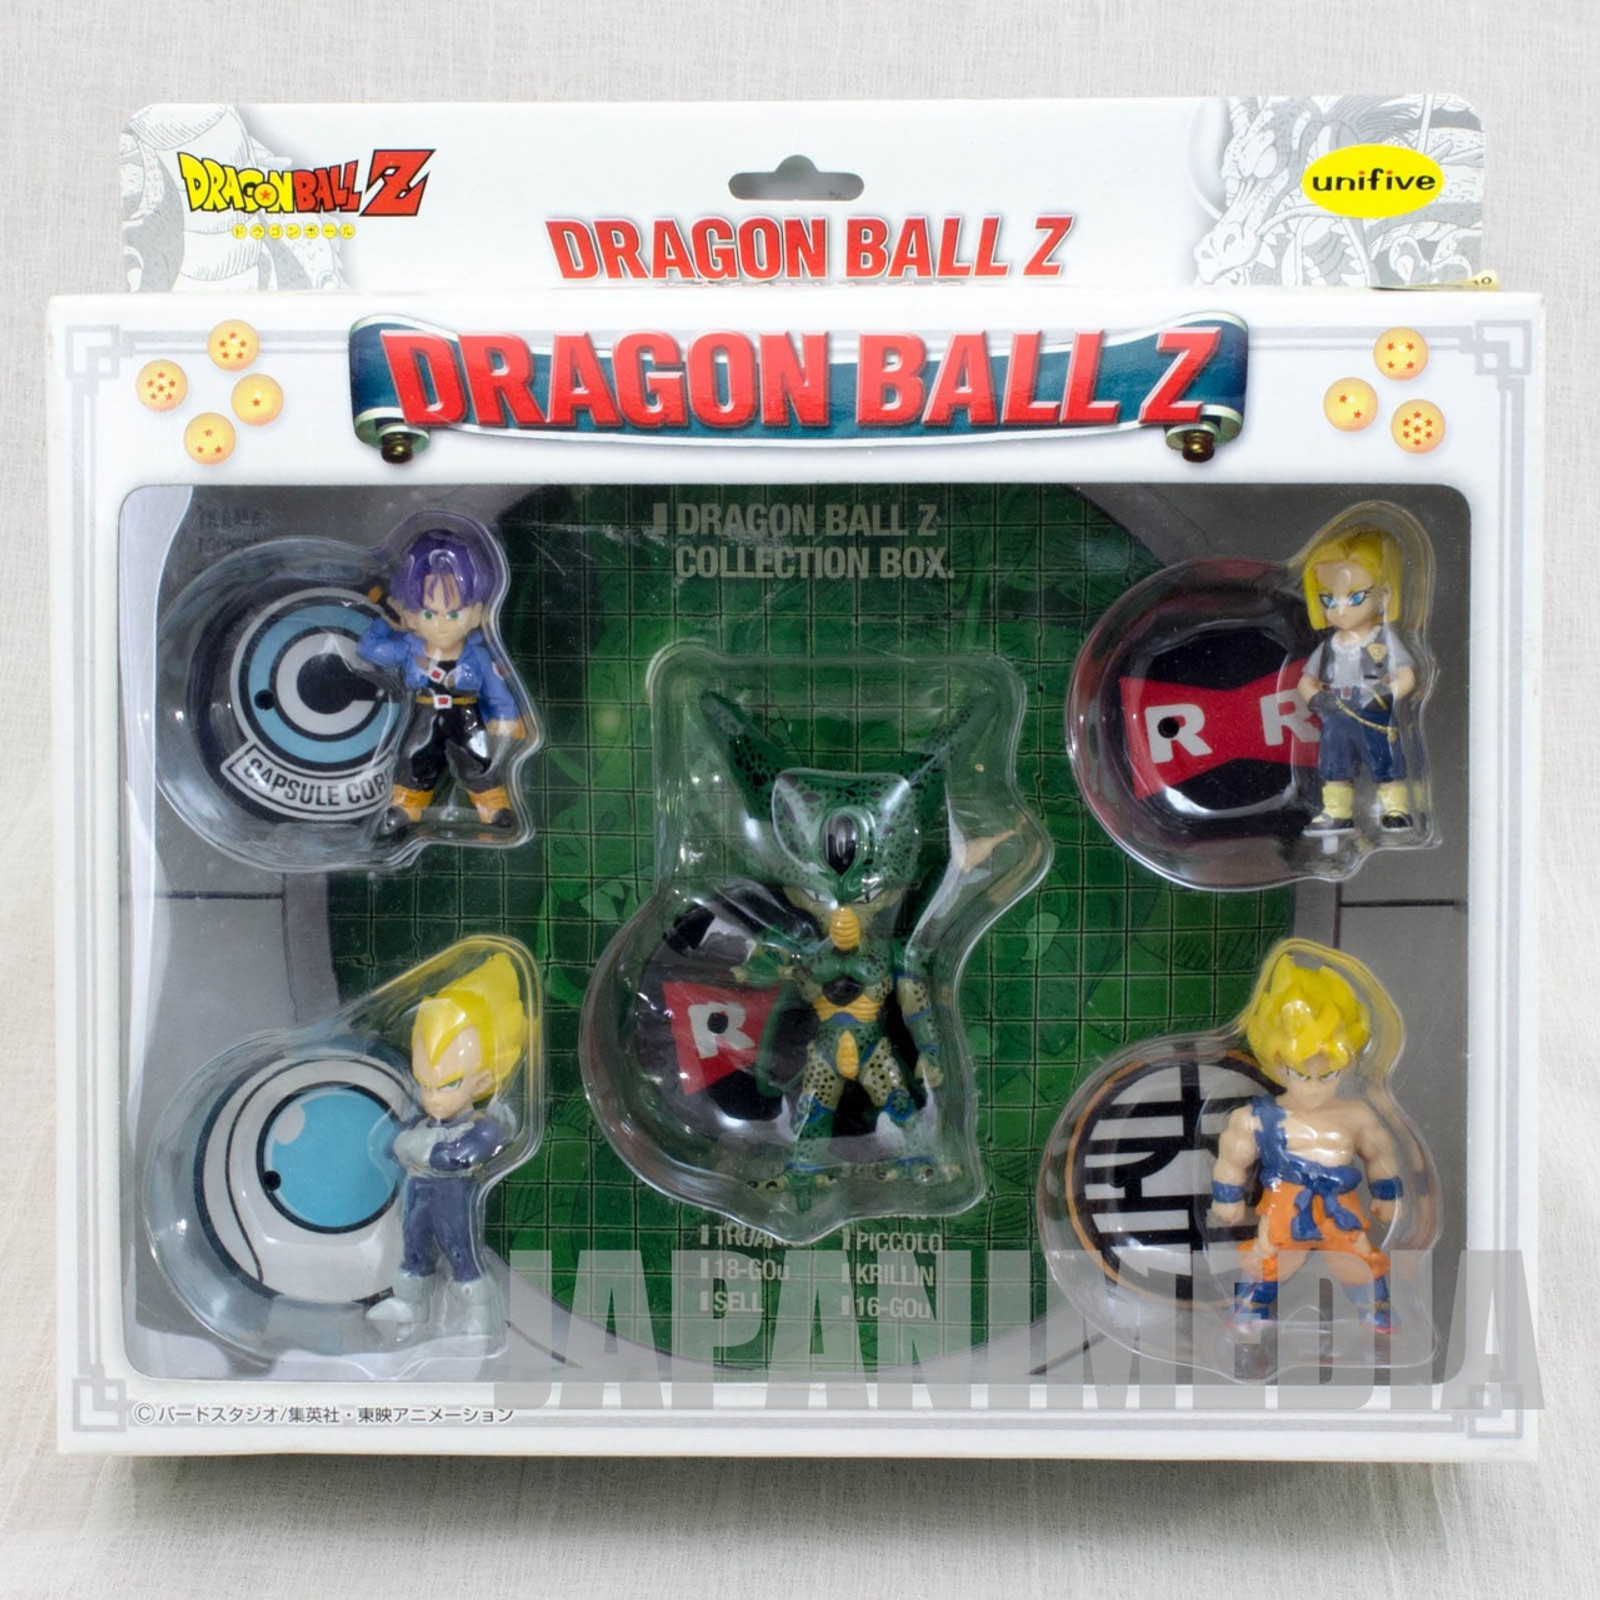 Dragon Ball Z Collection Box 2 Mini Figure Set Unifive JAPAN ANIME MANGA JUMP